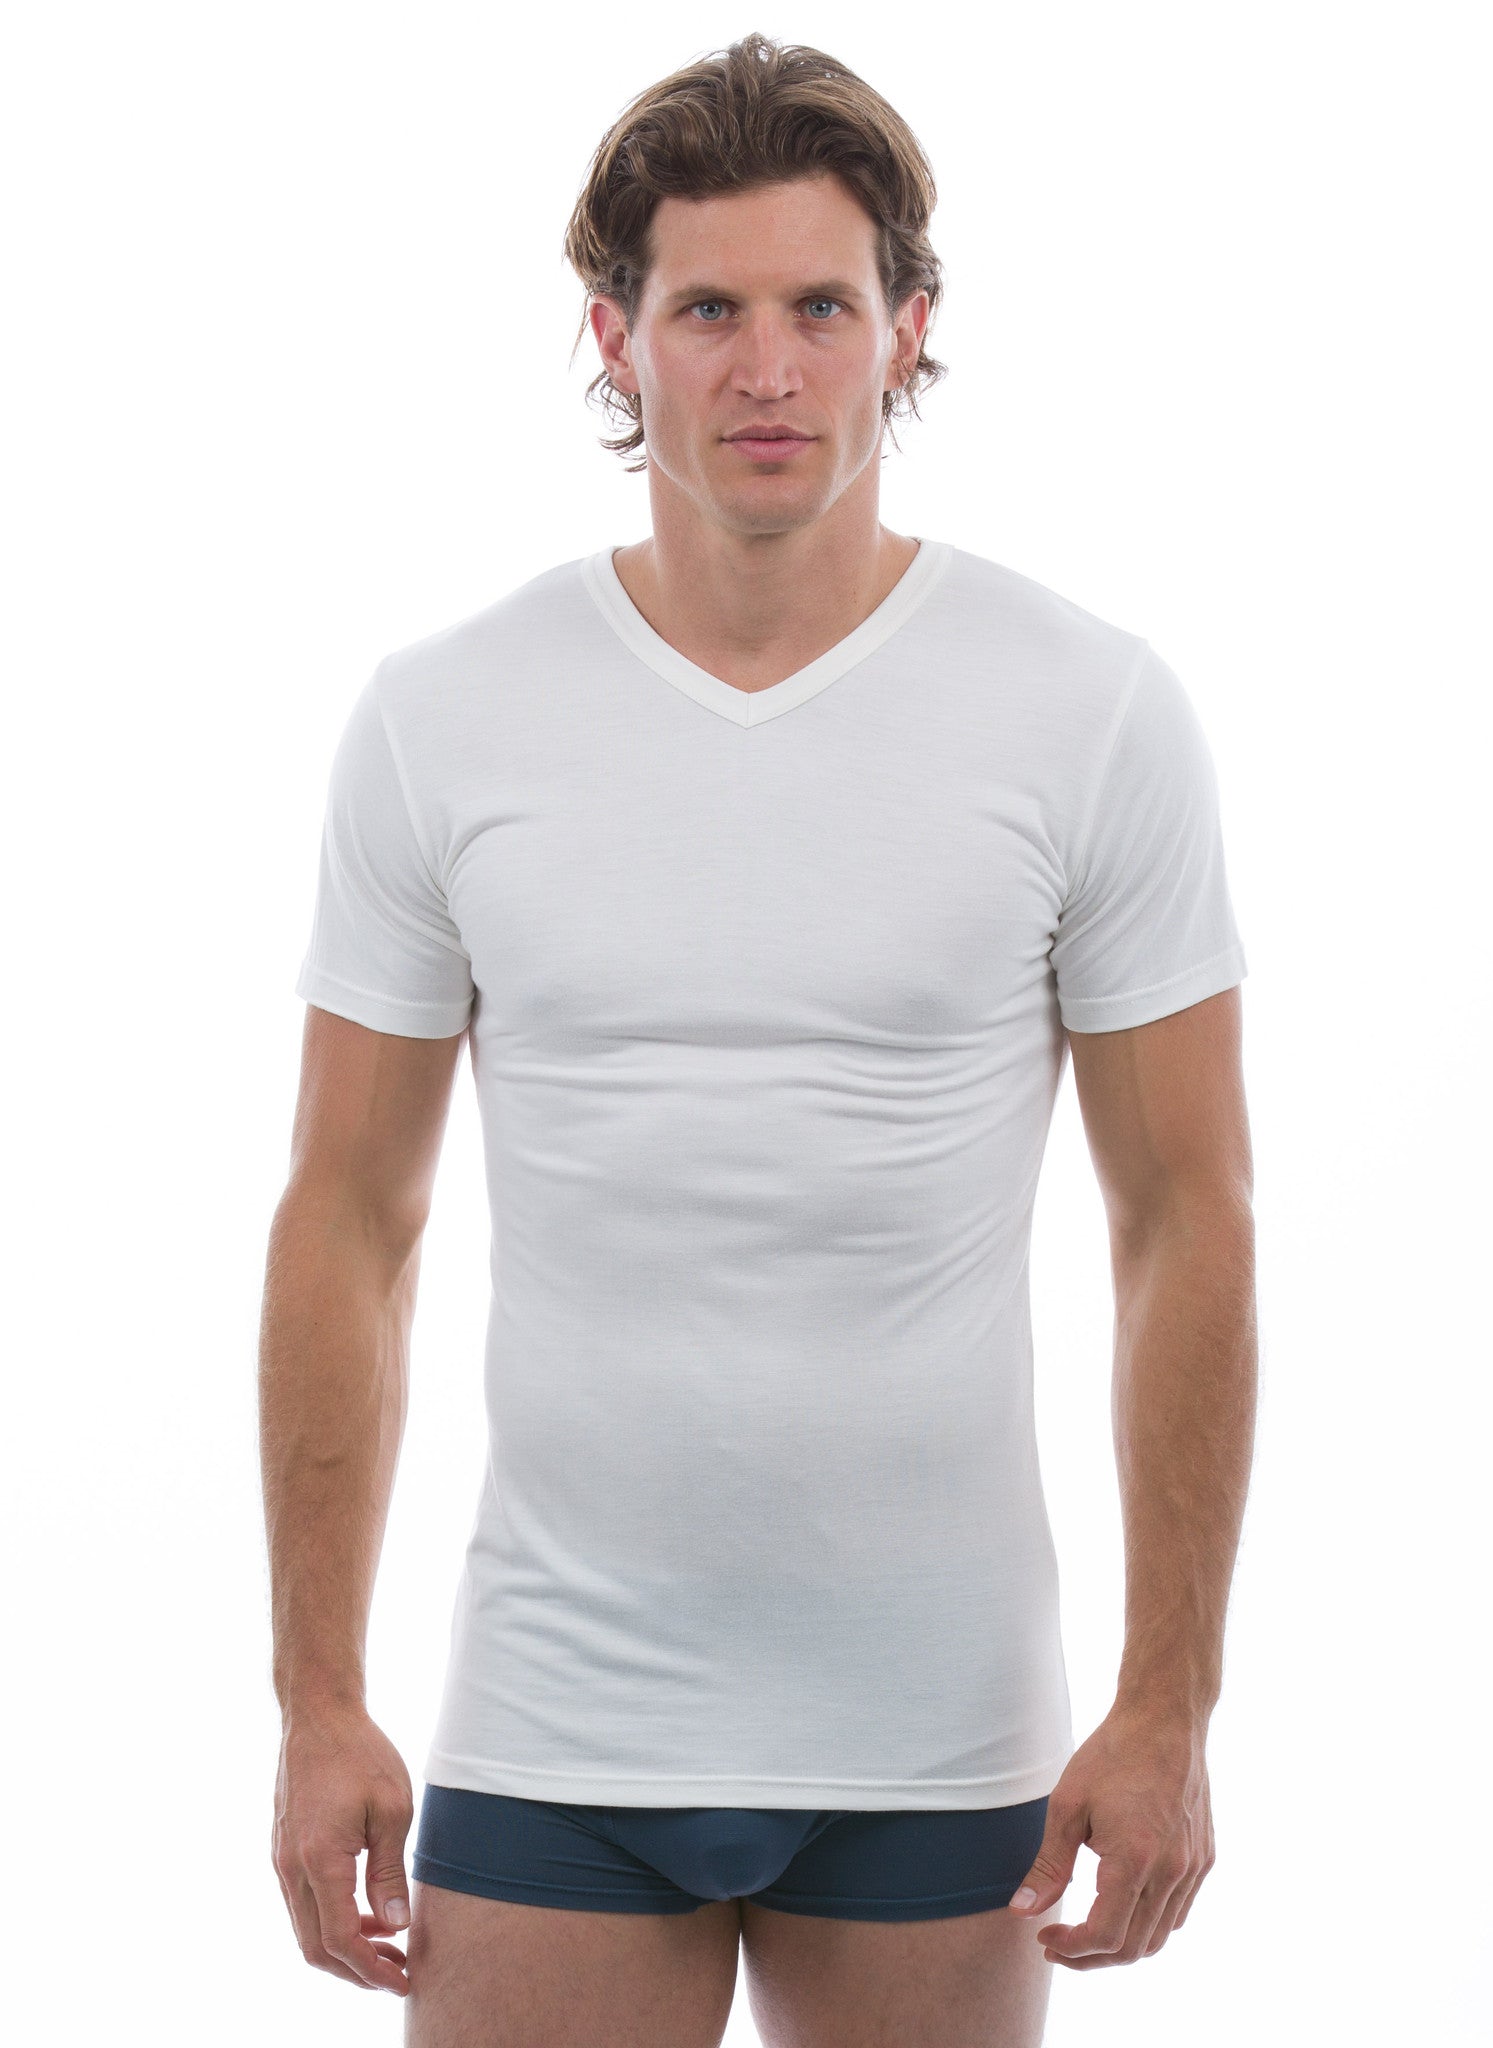 Undershirts – The Bamboo Shirt | Natural and Organic T-shirts